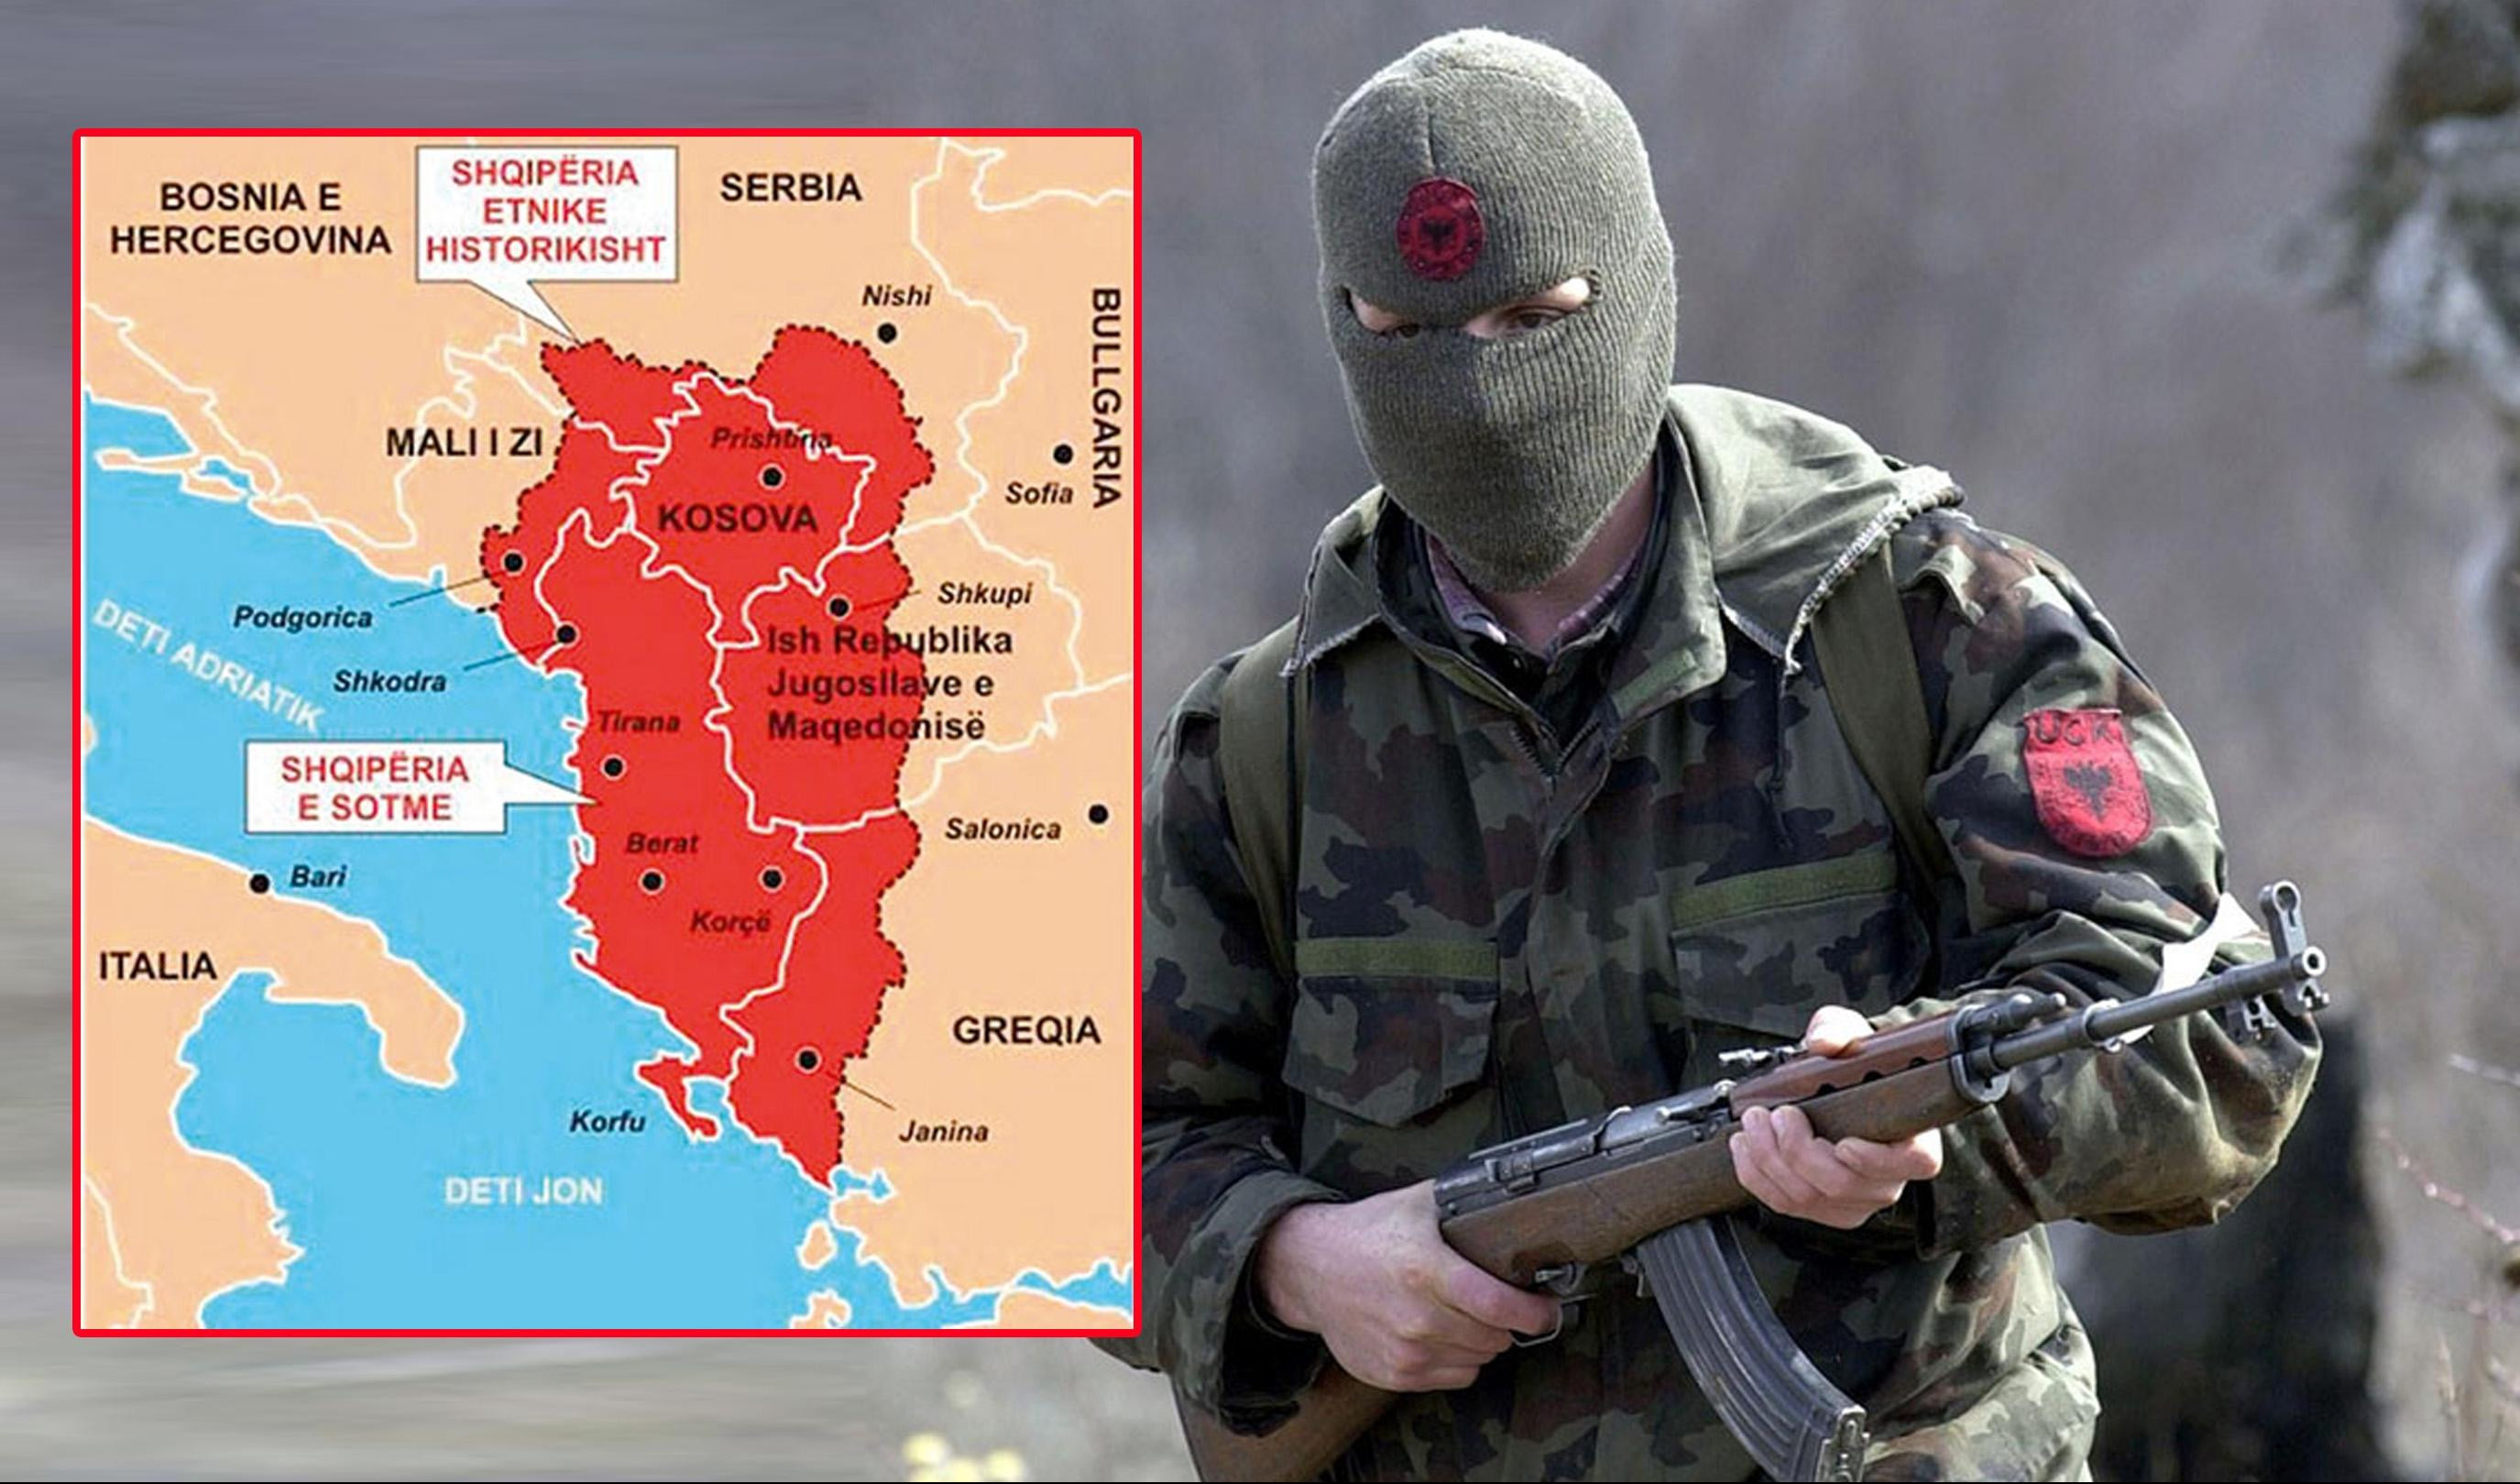 PAKLENI PLAN ZA STVARANJE VELIKE ALBANIJE: Posle Kosova, neka se spreme Crnogorci! Odvajanje od Srba će ih koštati - PRVI SU NA UDARU!